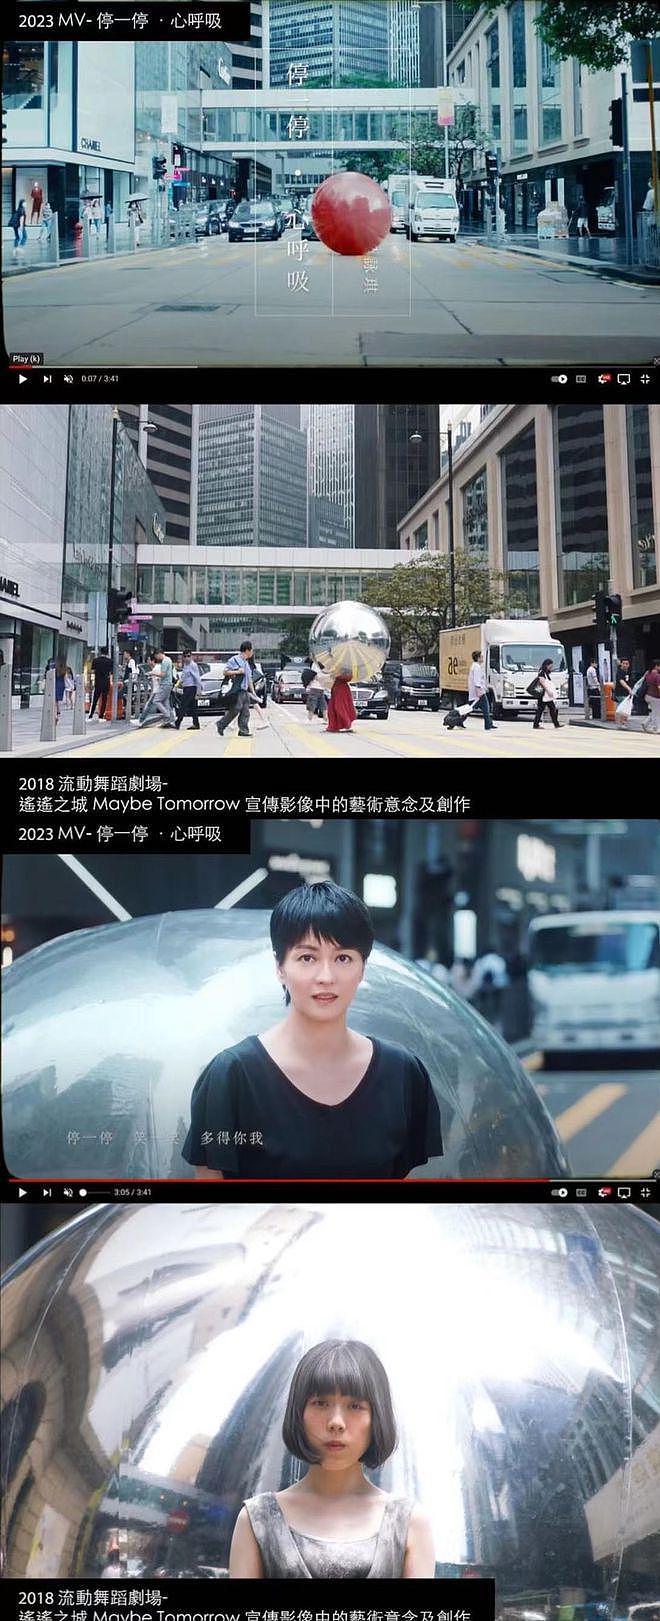 梁咏琪新歌 MV 被指抄袭，相似度高达 9 成，原创者要求其公开道歉 - 5